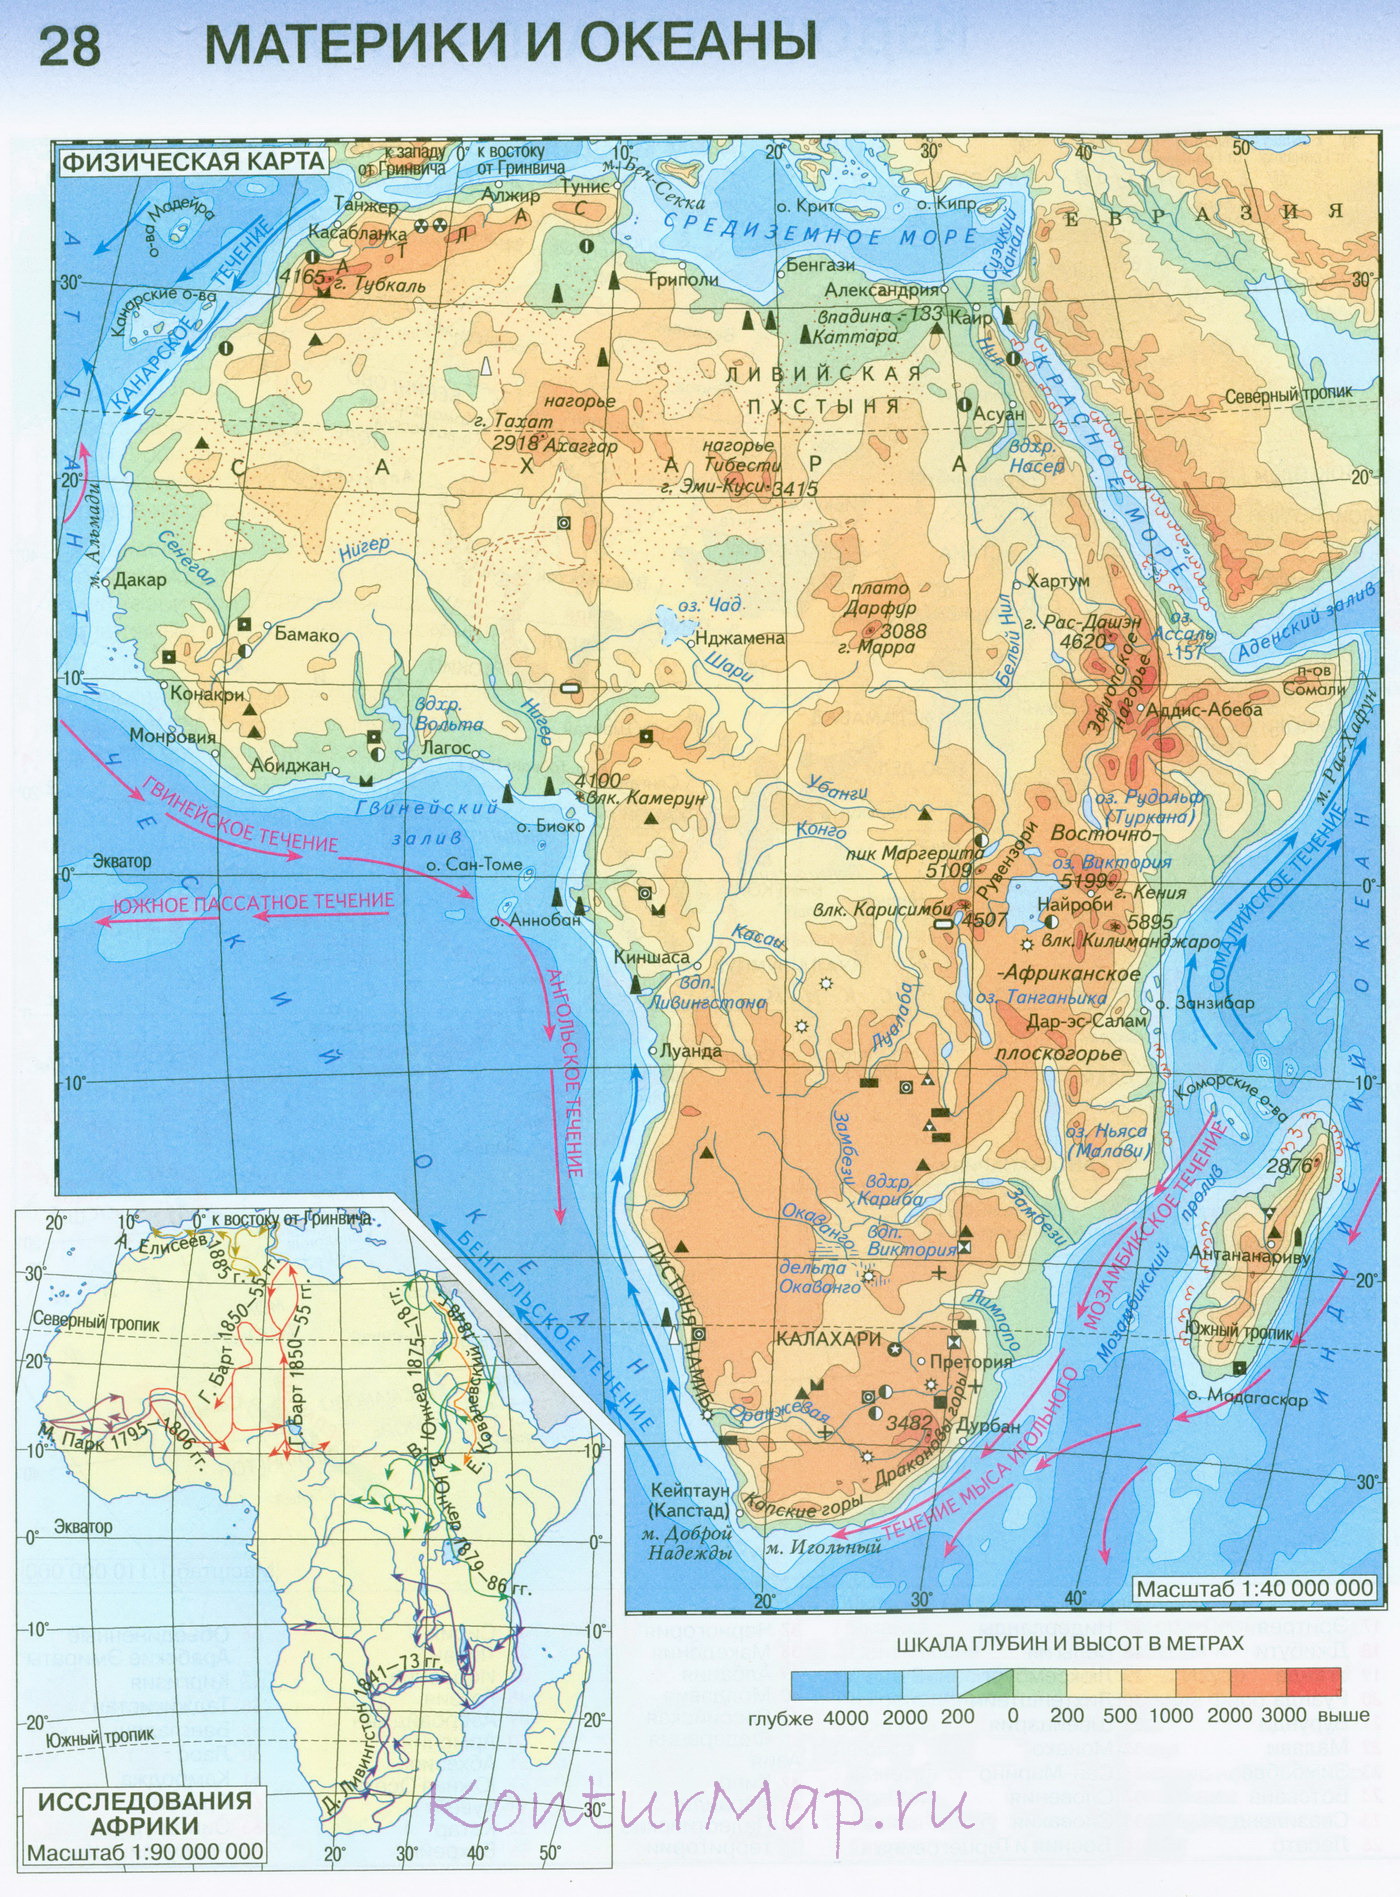 Географическое положение и исследование Африки. - 7 клас - Географія -Каталог статей - Cайт учителя биологии и географии